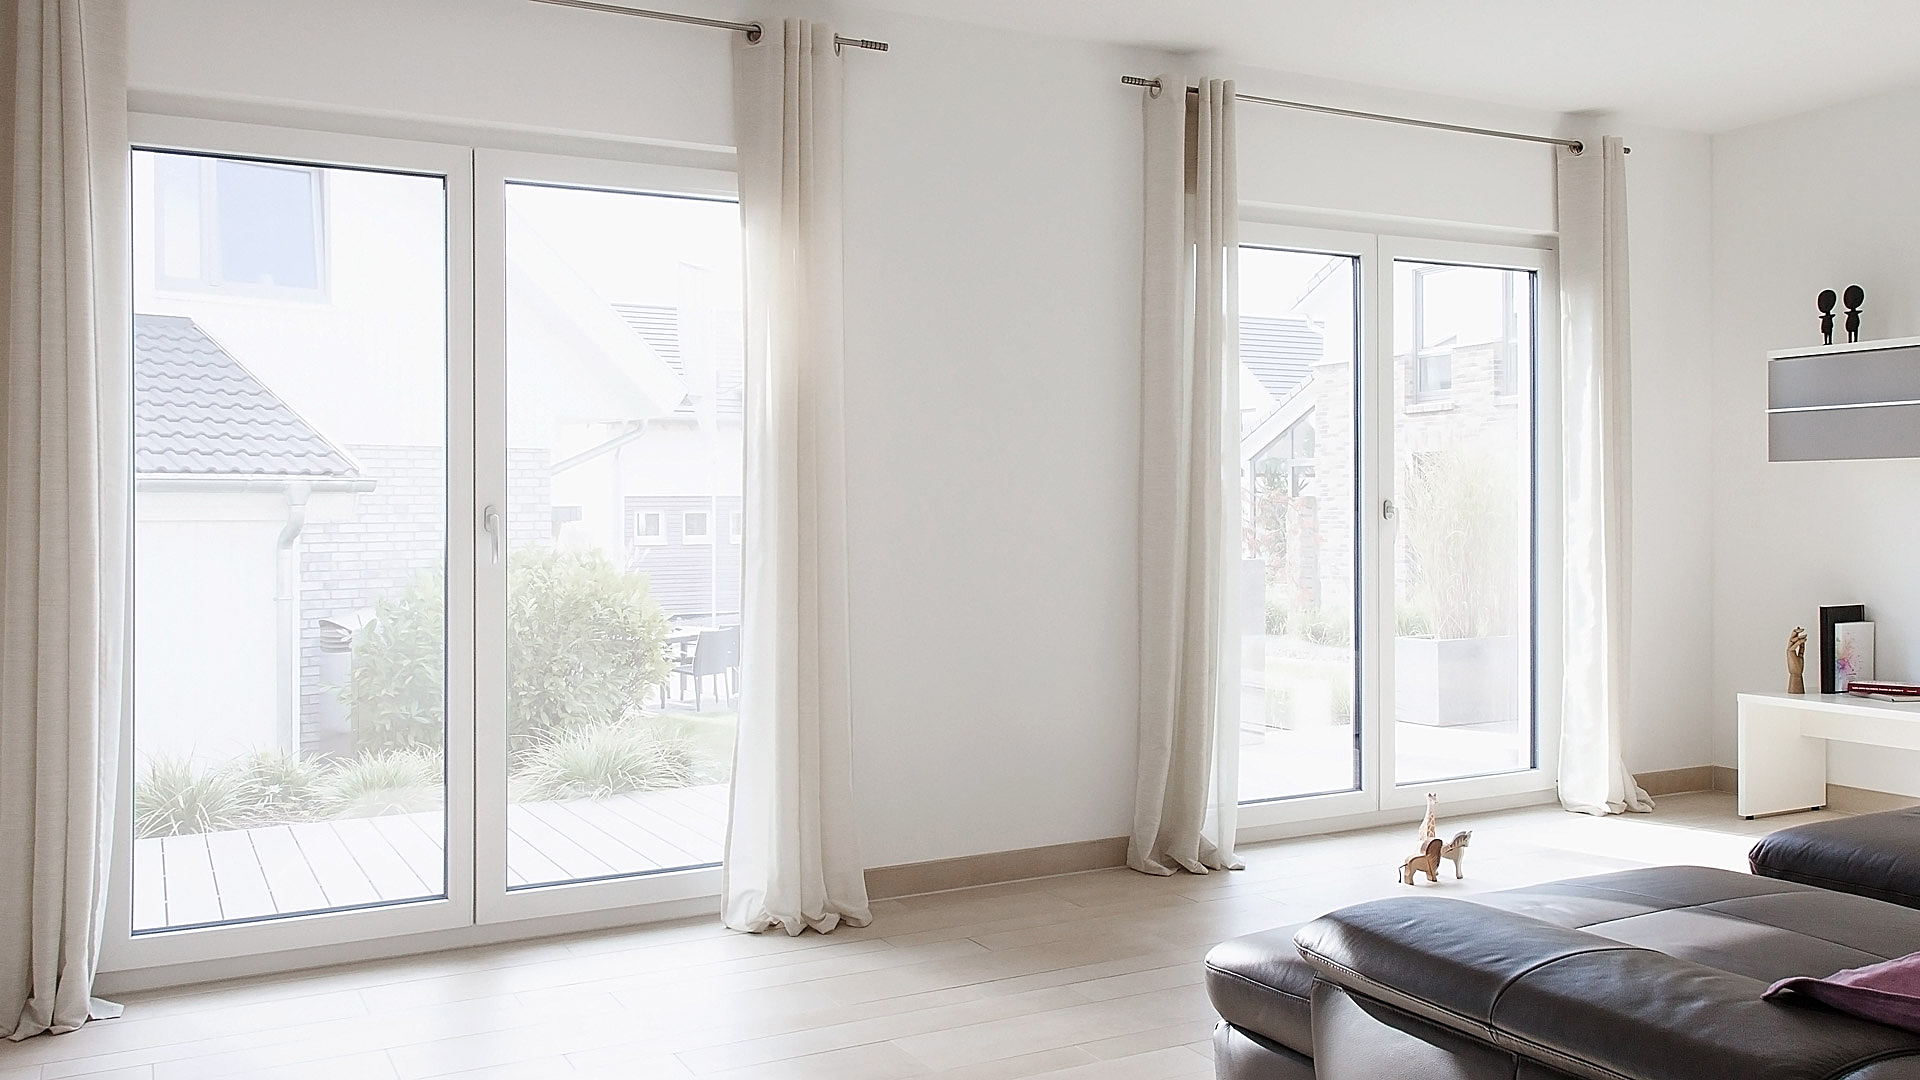 Fensterbau Schlewitz - Fenster und Türen aus Plauen-Oberlosa - Startbild 1